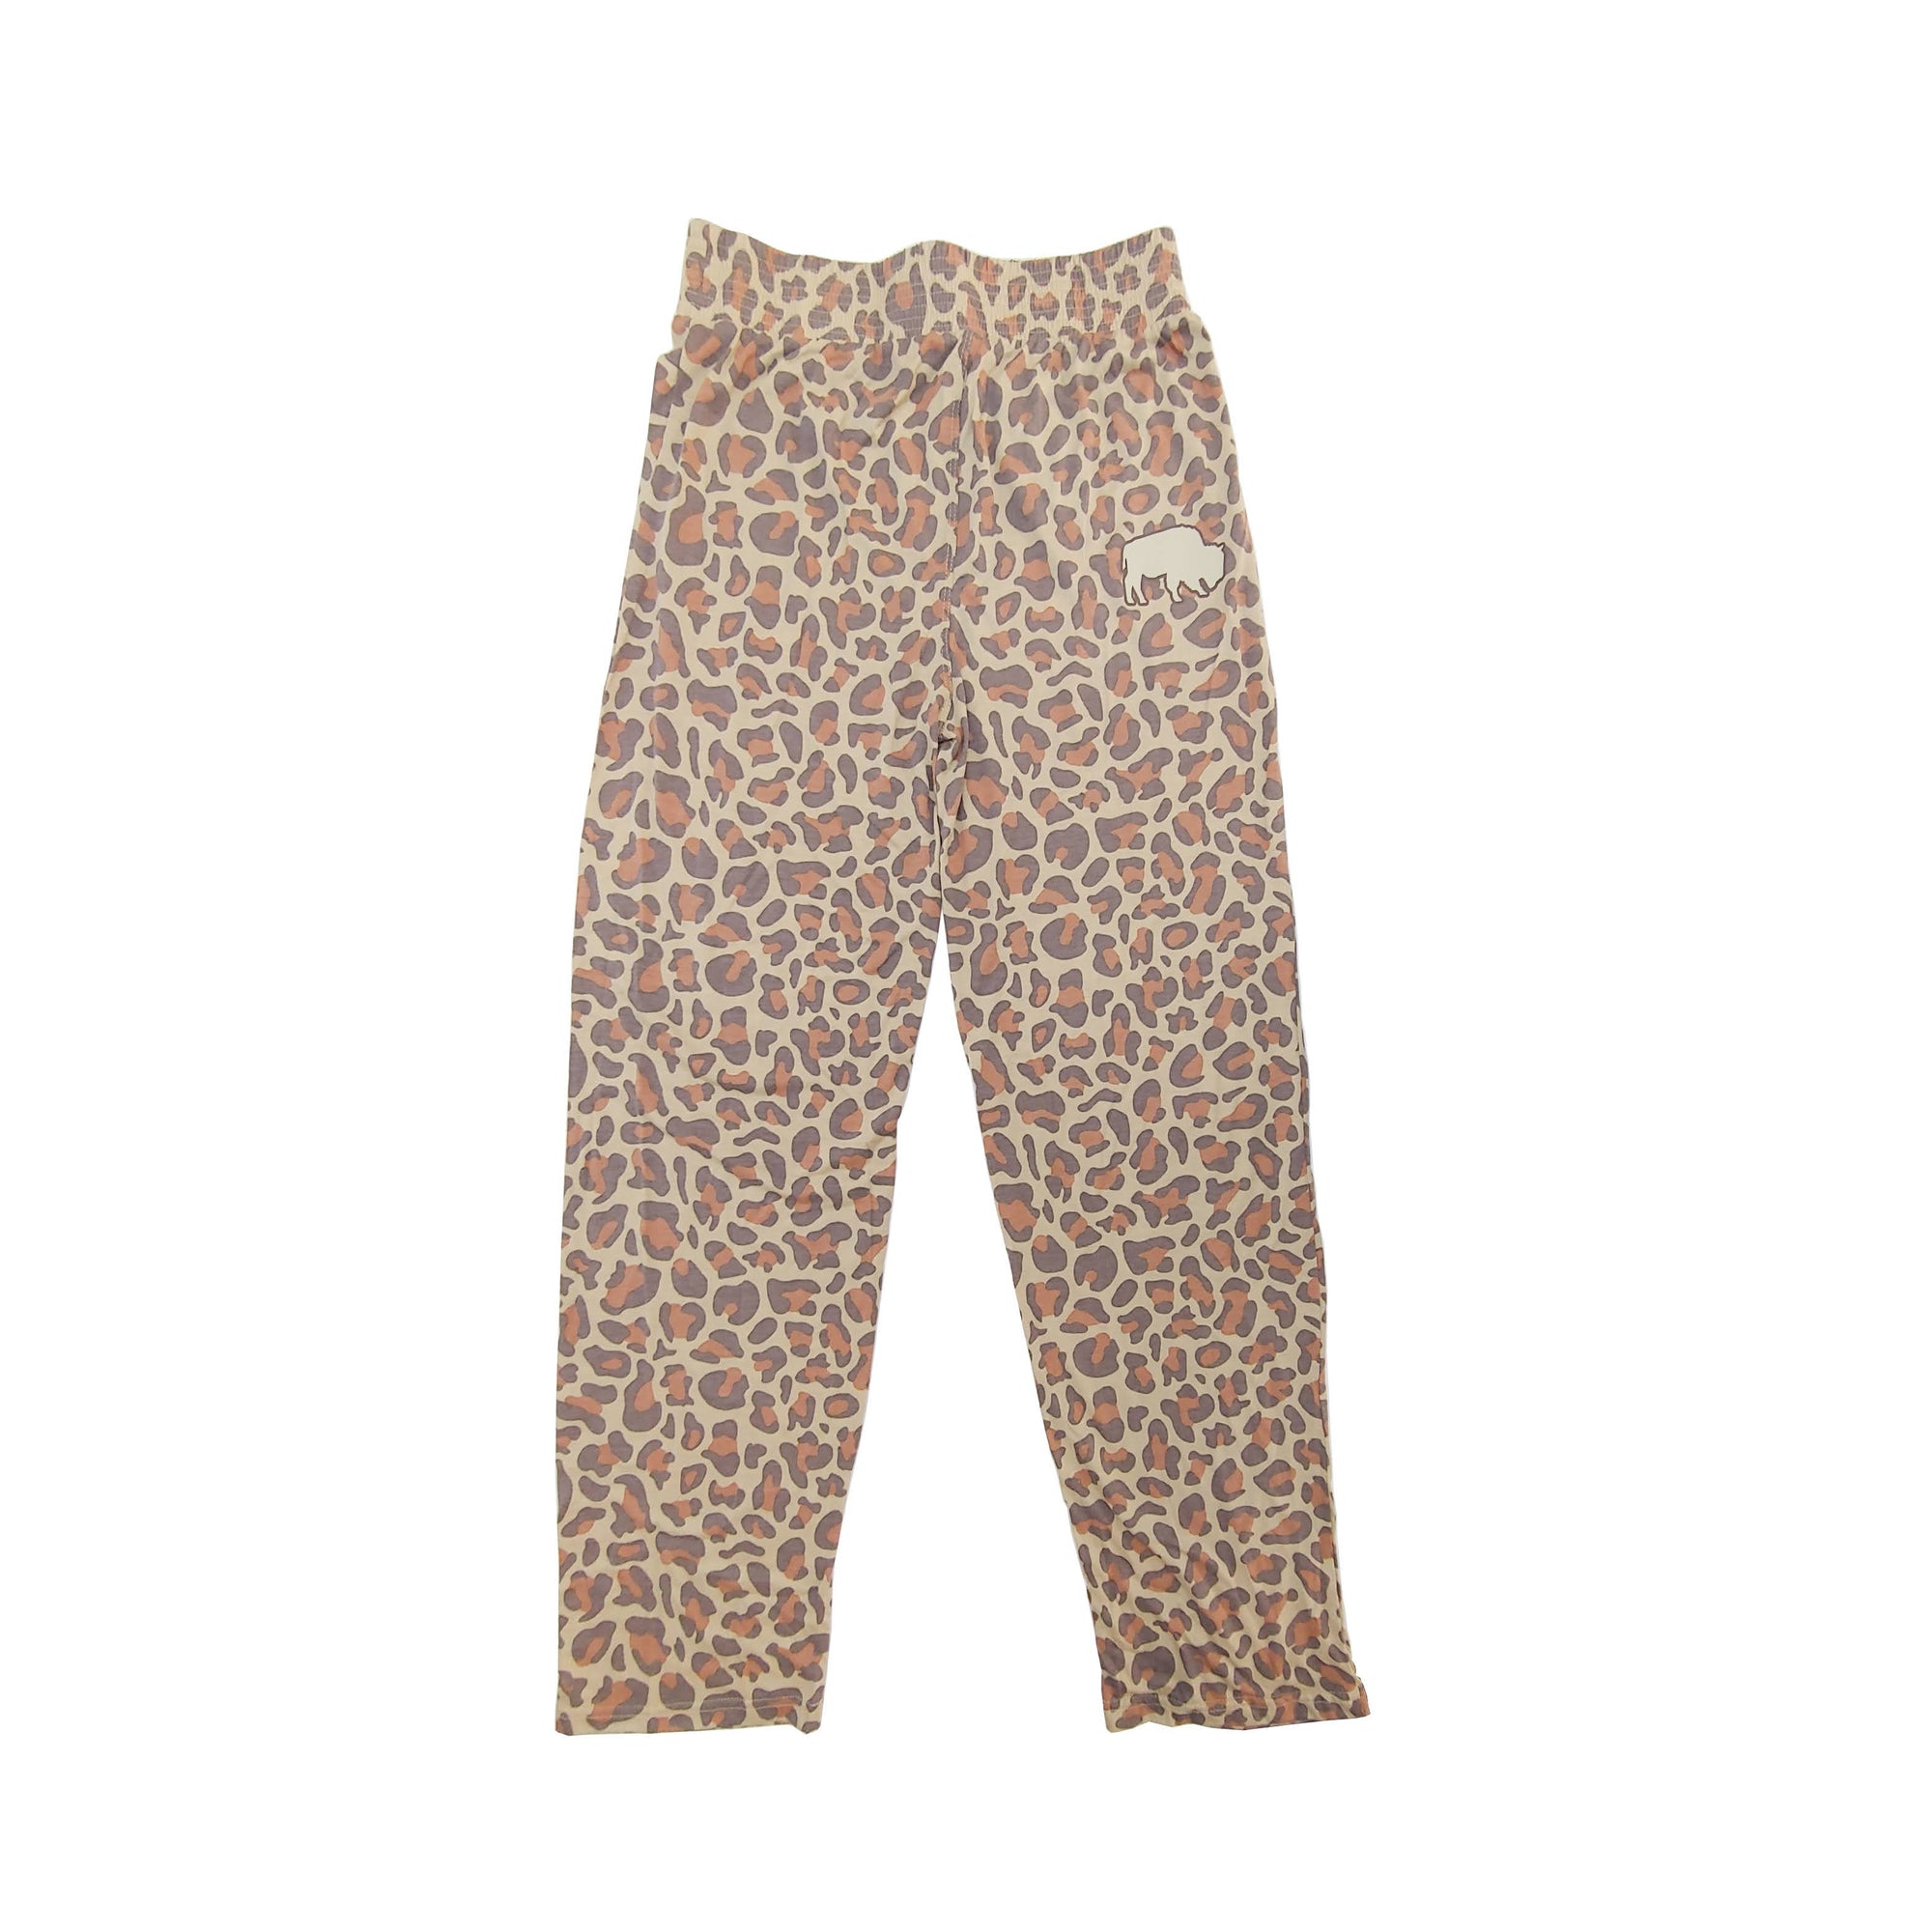 Jane Marie Leopard Print Loungewear Pants